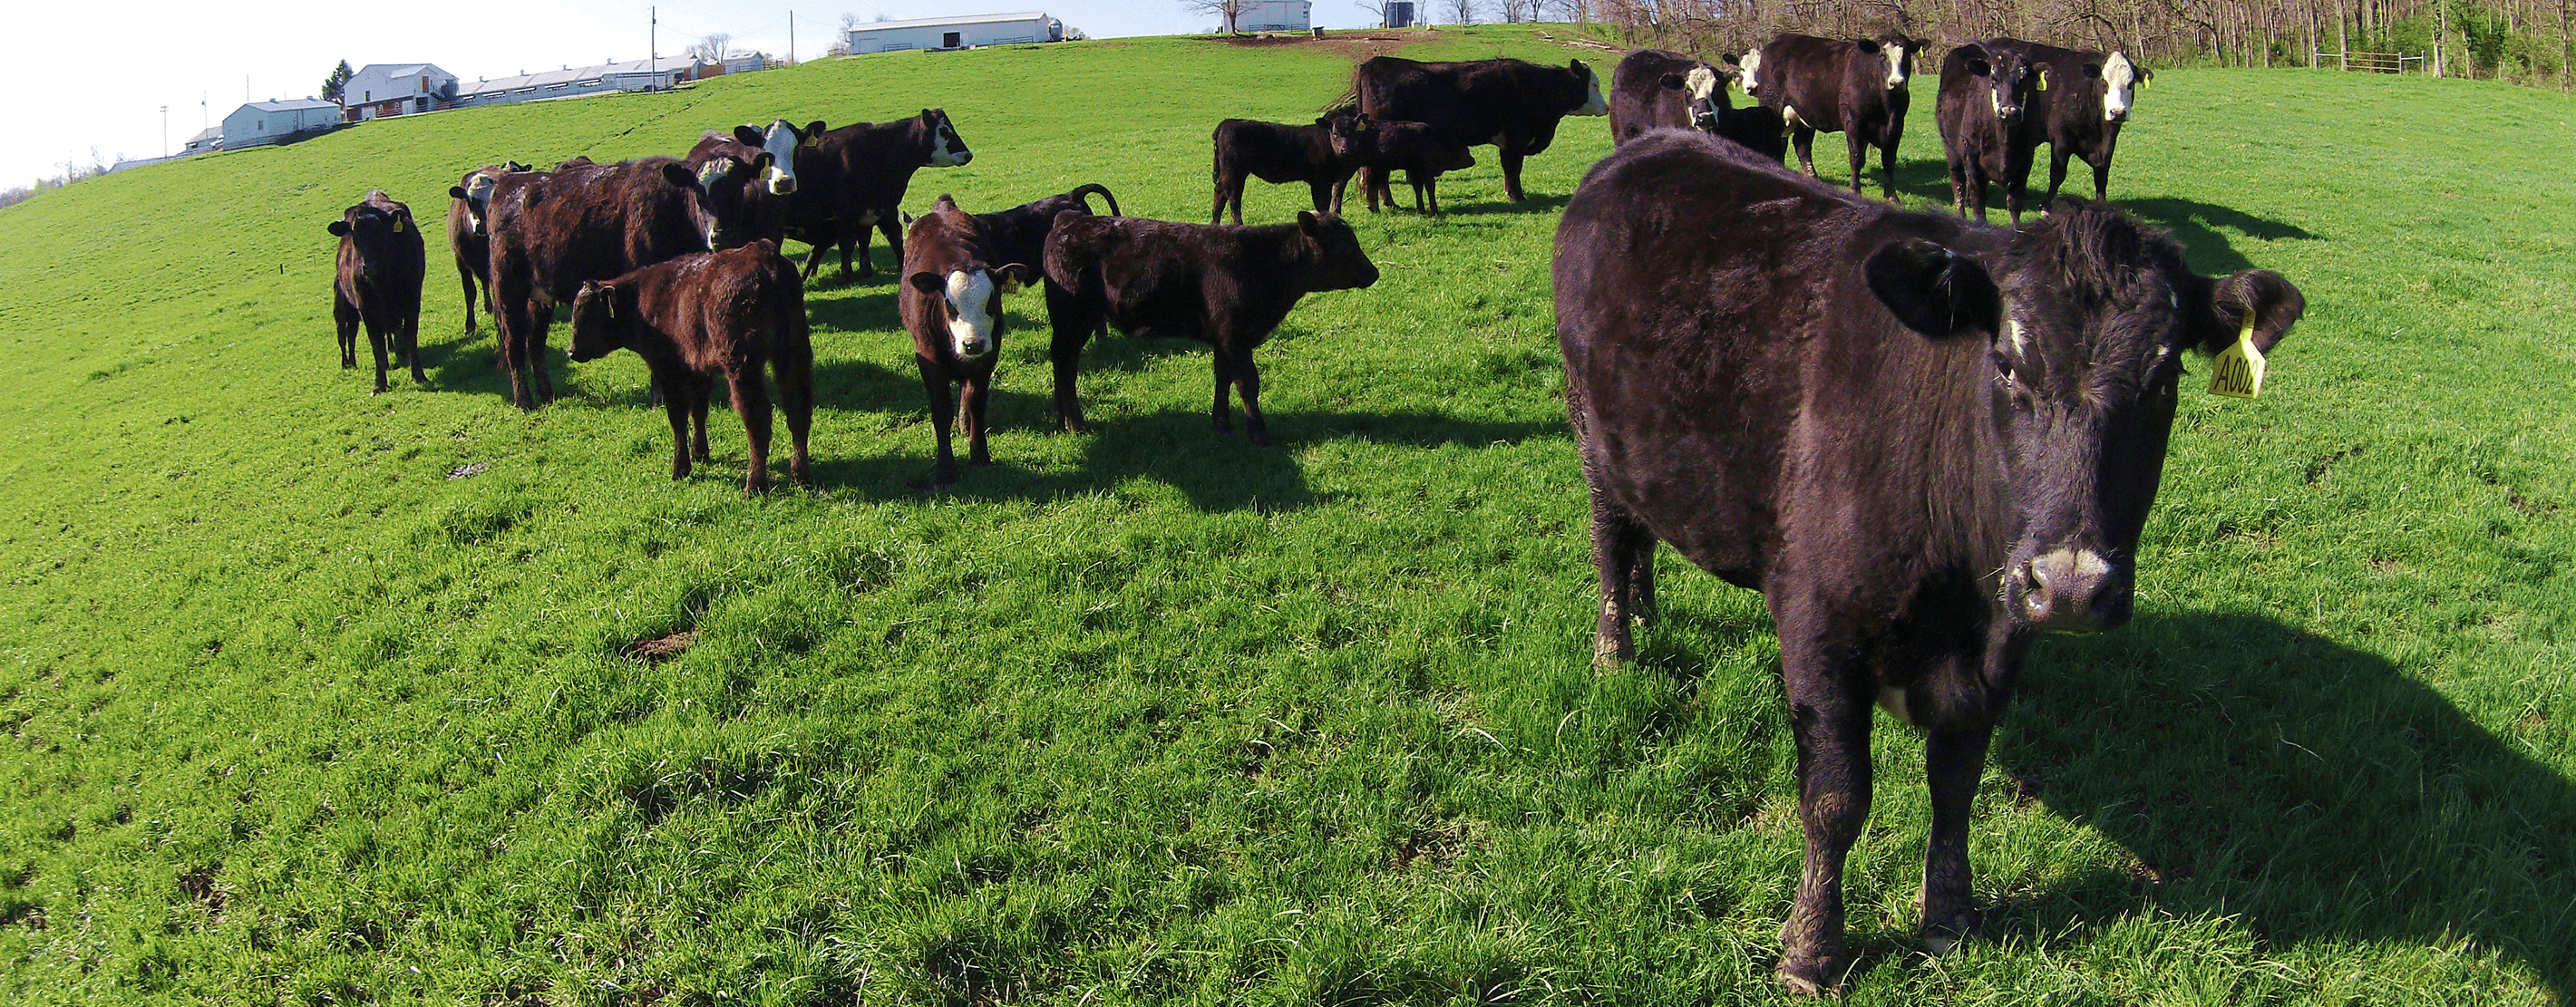 Cattle Grazing On A Field